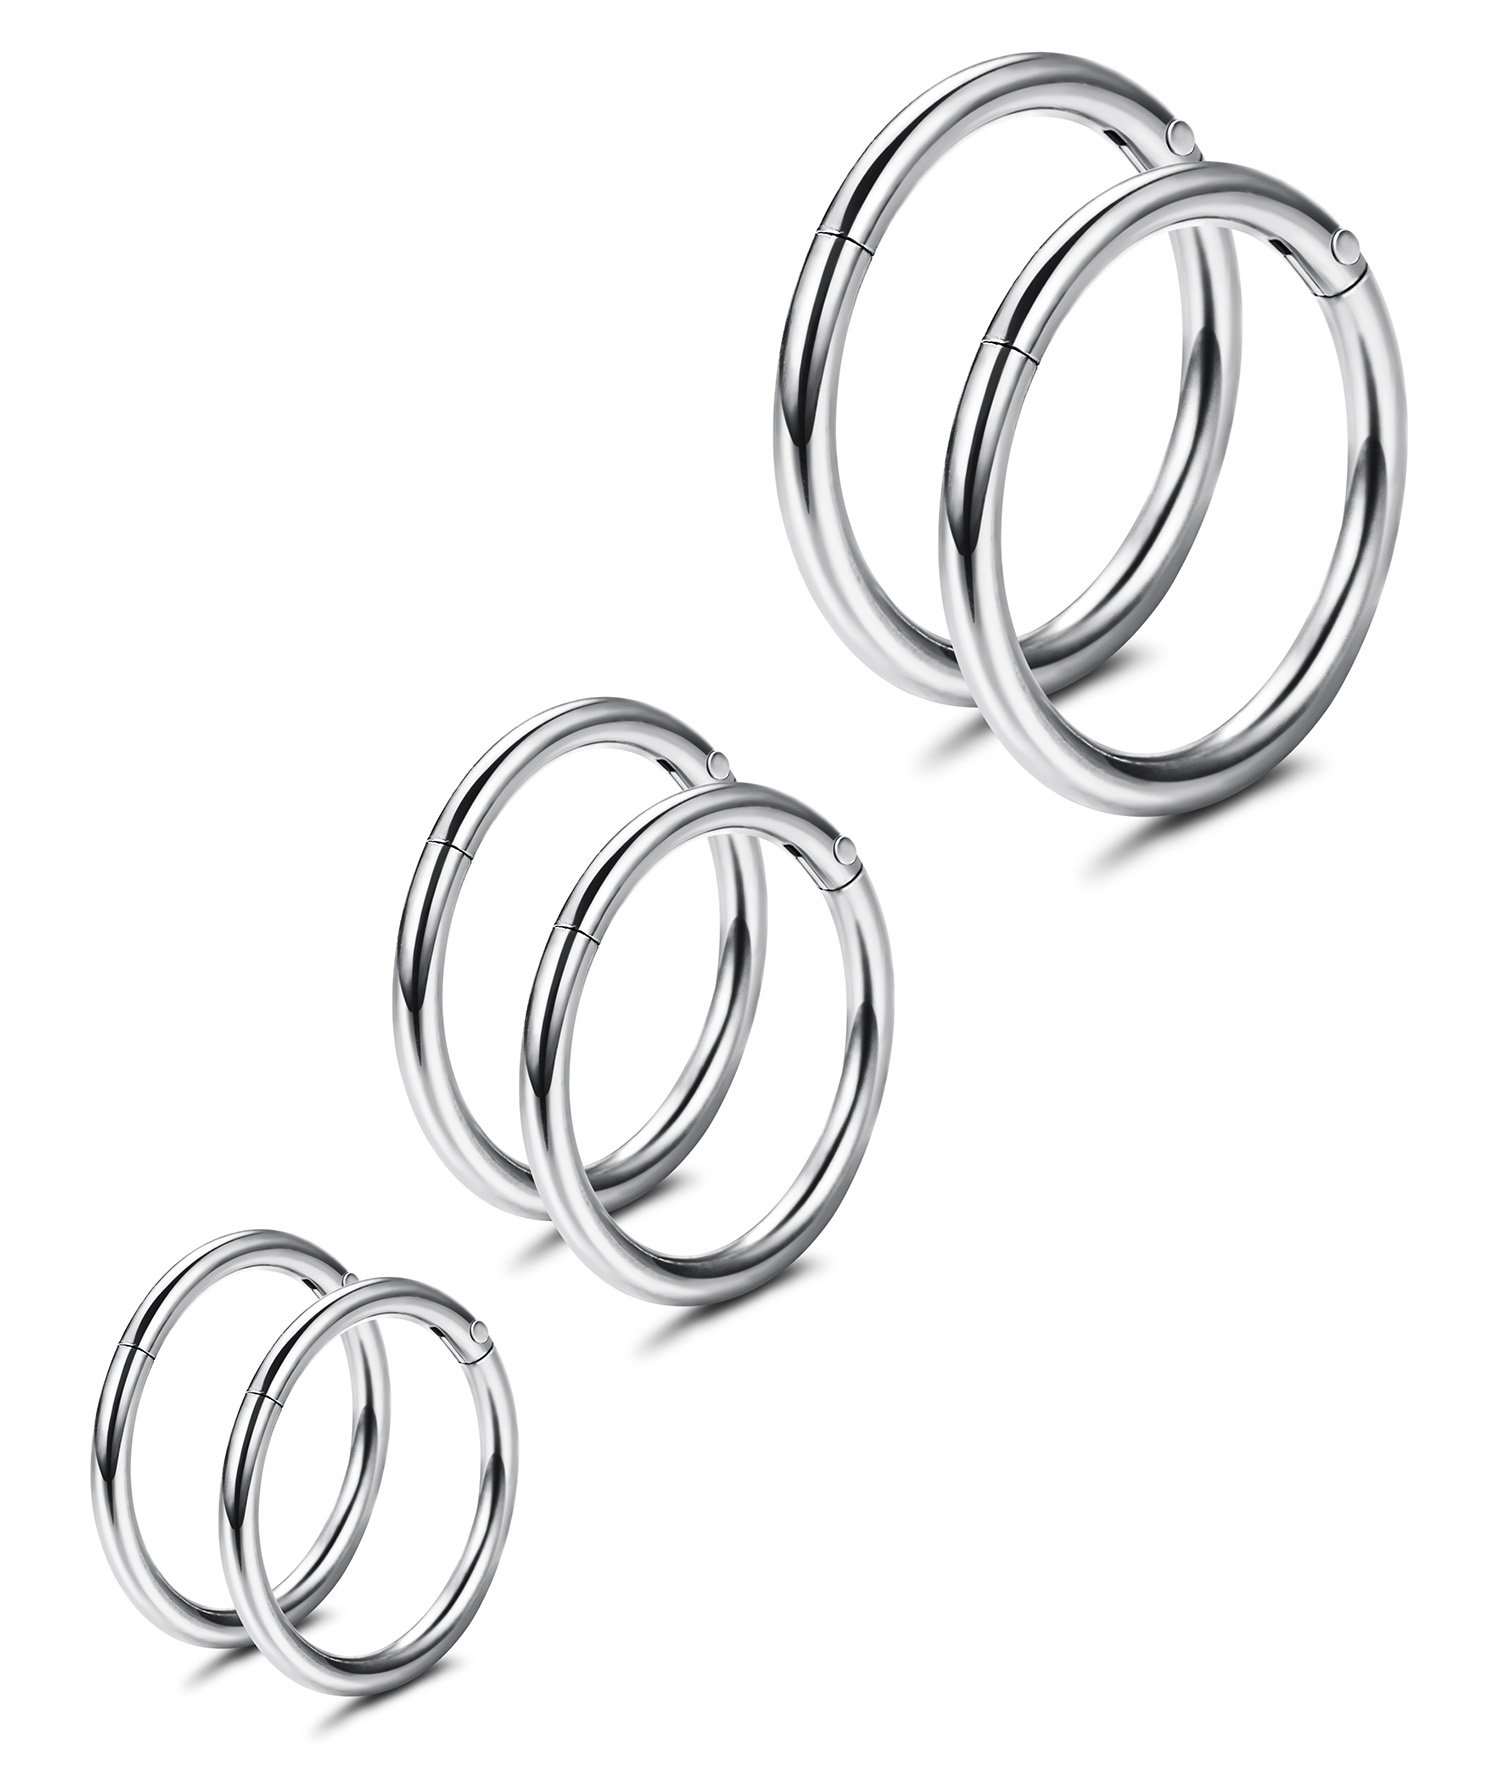 THUNARAZ 3-6Pairs Stainless Steel 16G Sleeper Earrings Septum Clicker Nose Lip Ring Body Piercing